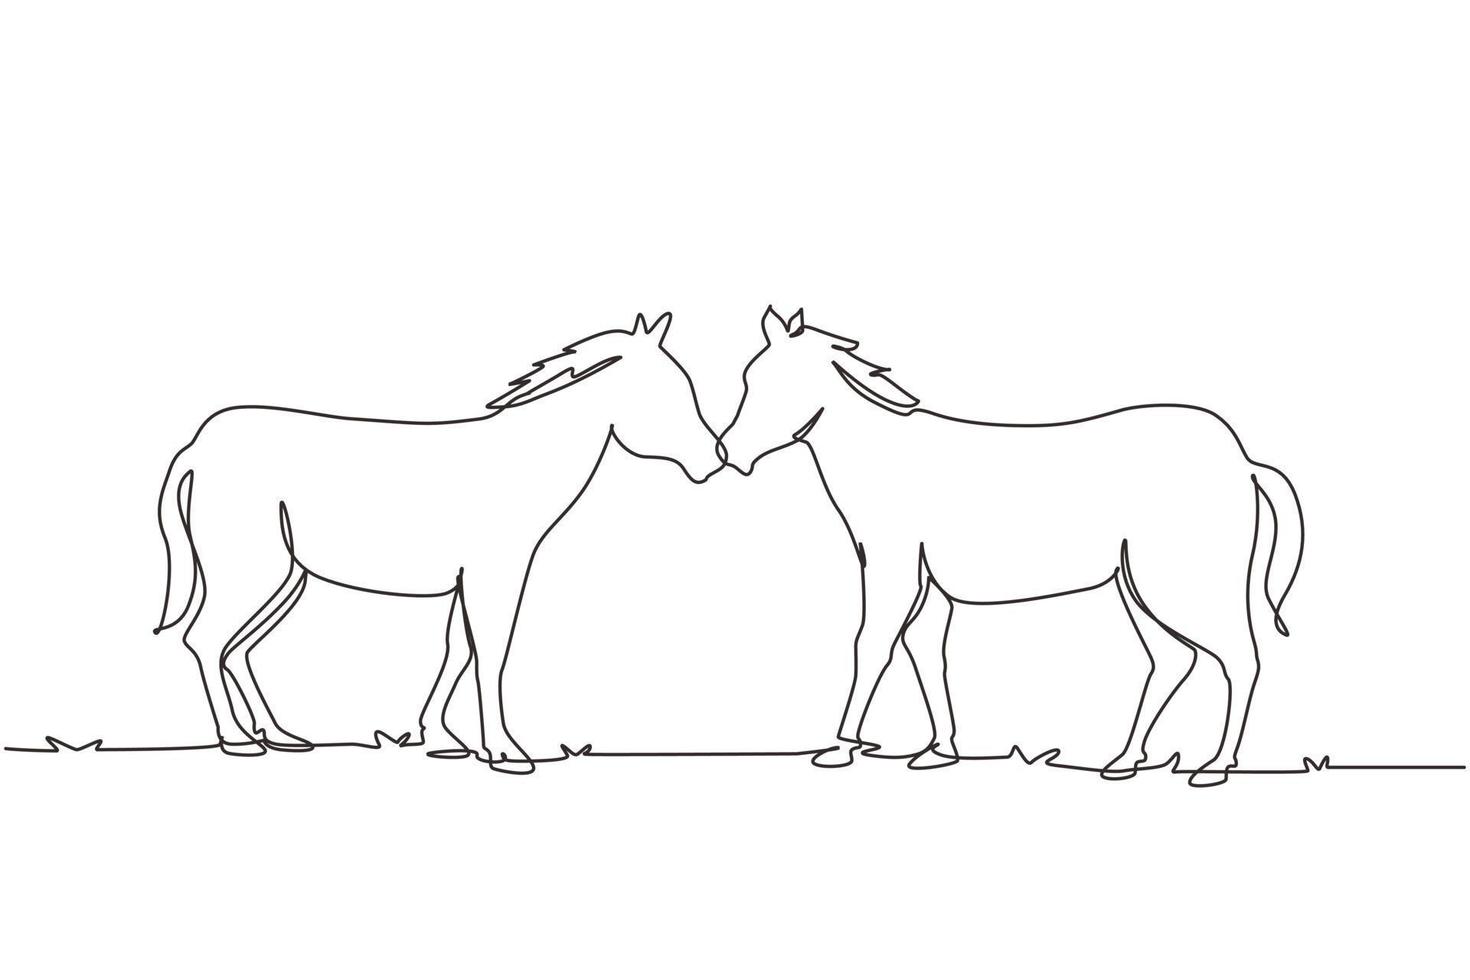 une seule ligne continue dessinant deux chevaux marchant gracieusement face à face. le mustang sauvage galope dans la nature libre. mascotte animale pour ranch de chevaux. dynamique une ligne dessiner illustration vectorielle de conception graphique vecteur